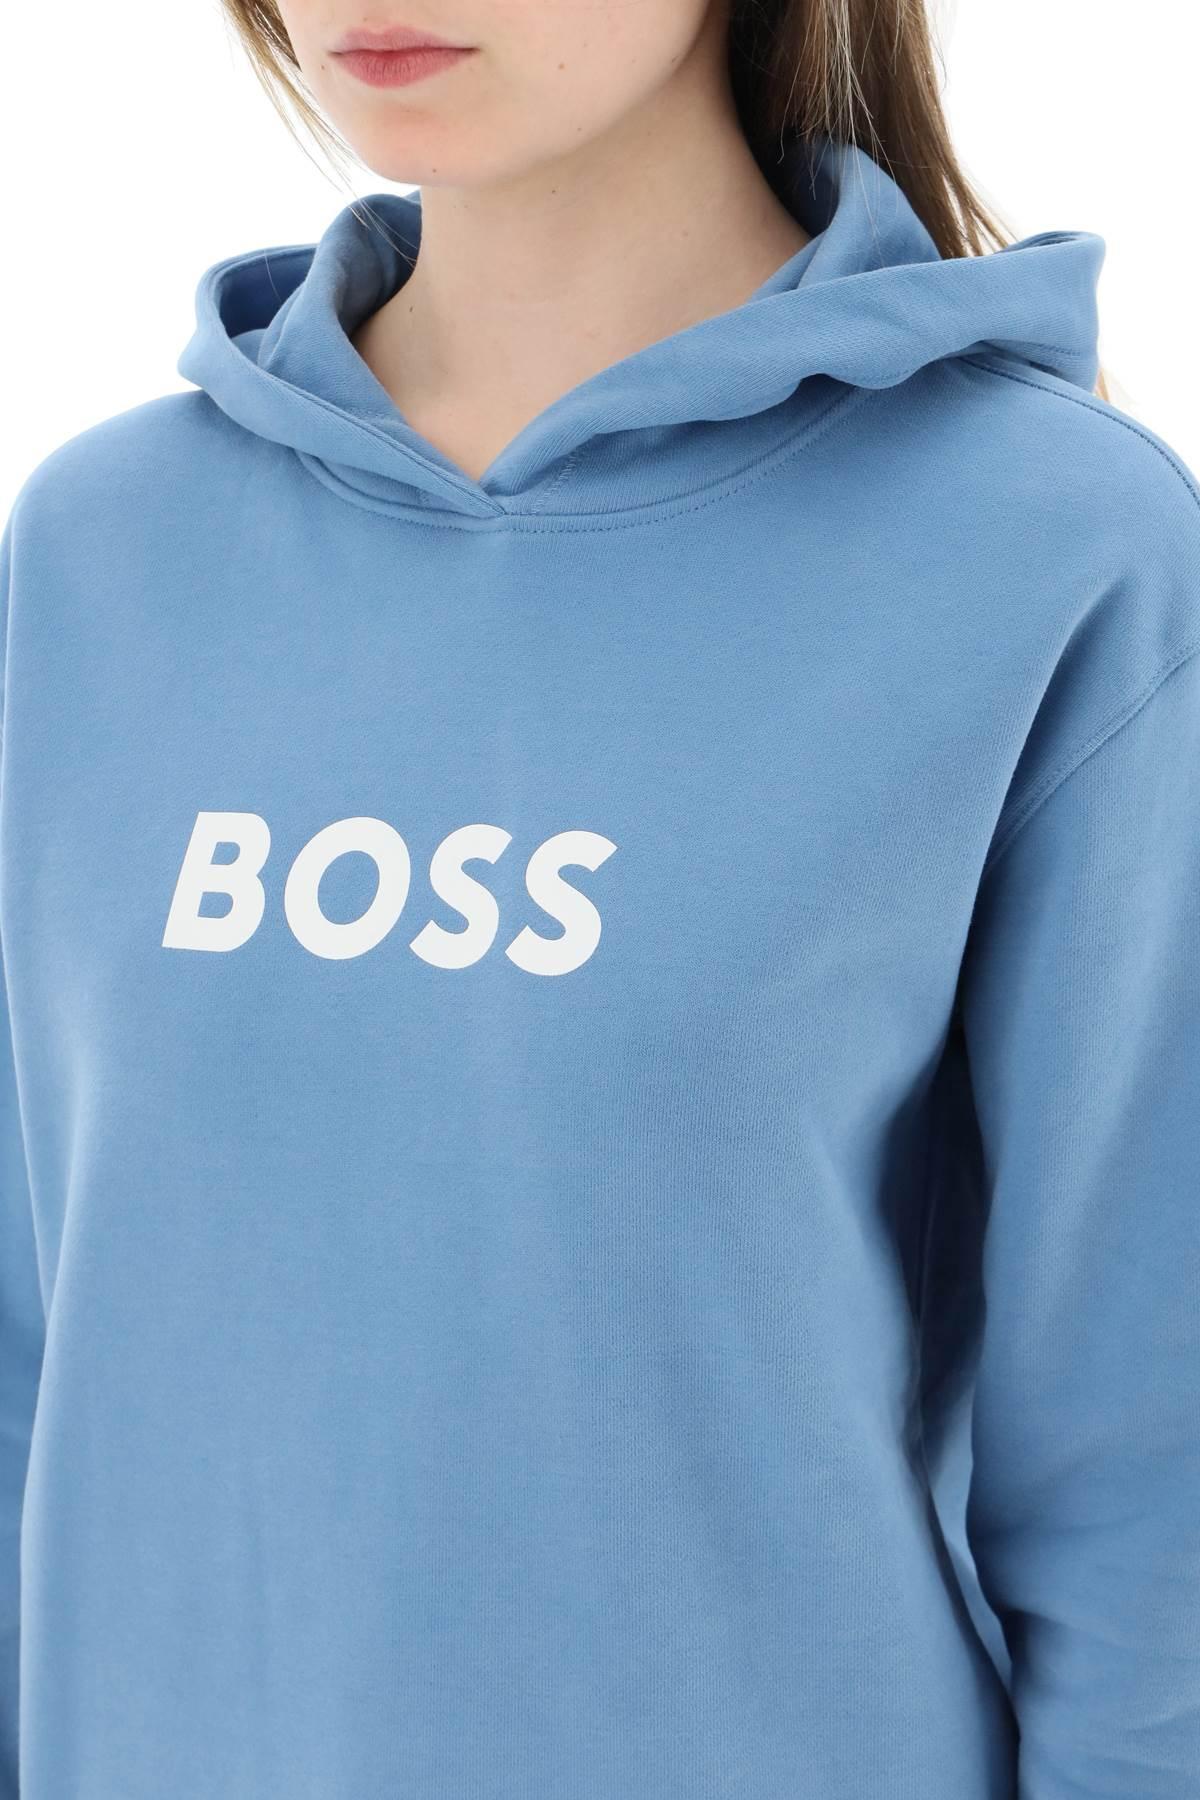 BOSS by HUGO BOSS Logo Printed Hoodie in Blue | Lyst